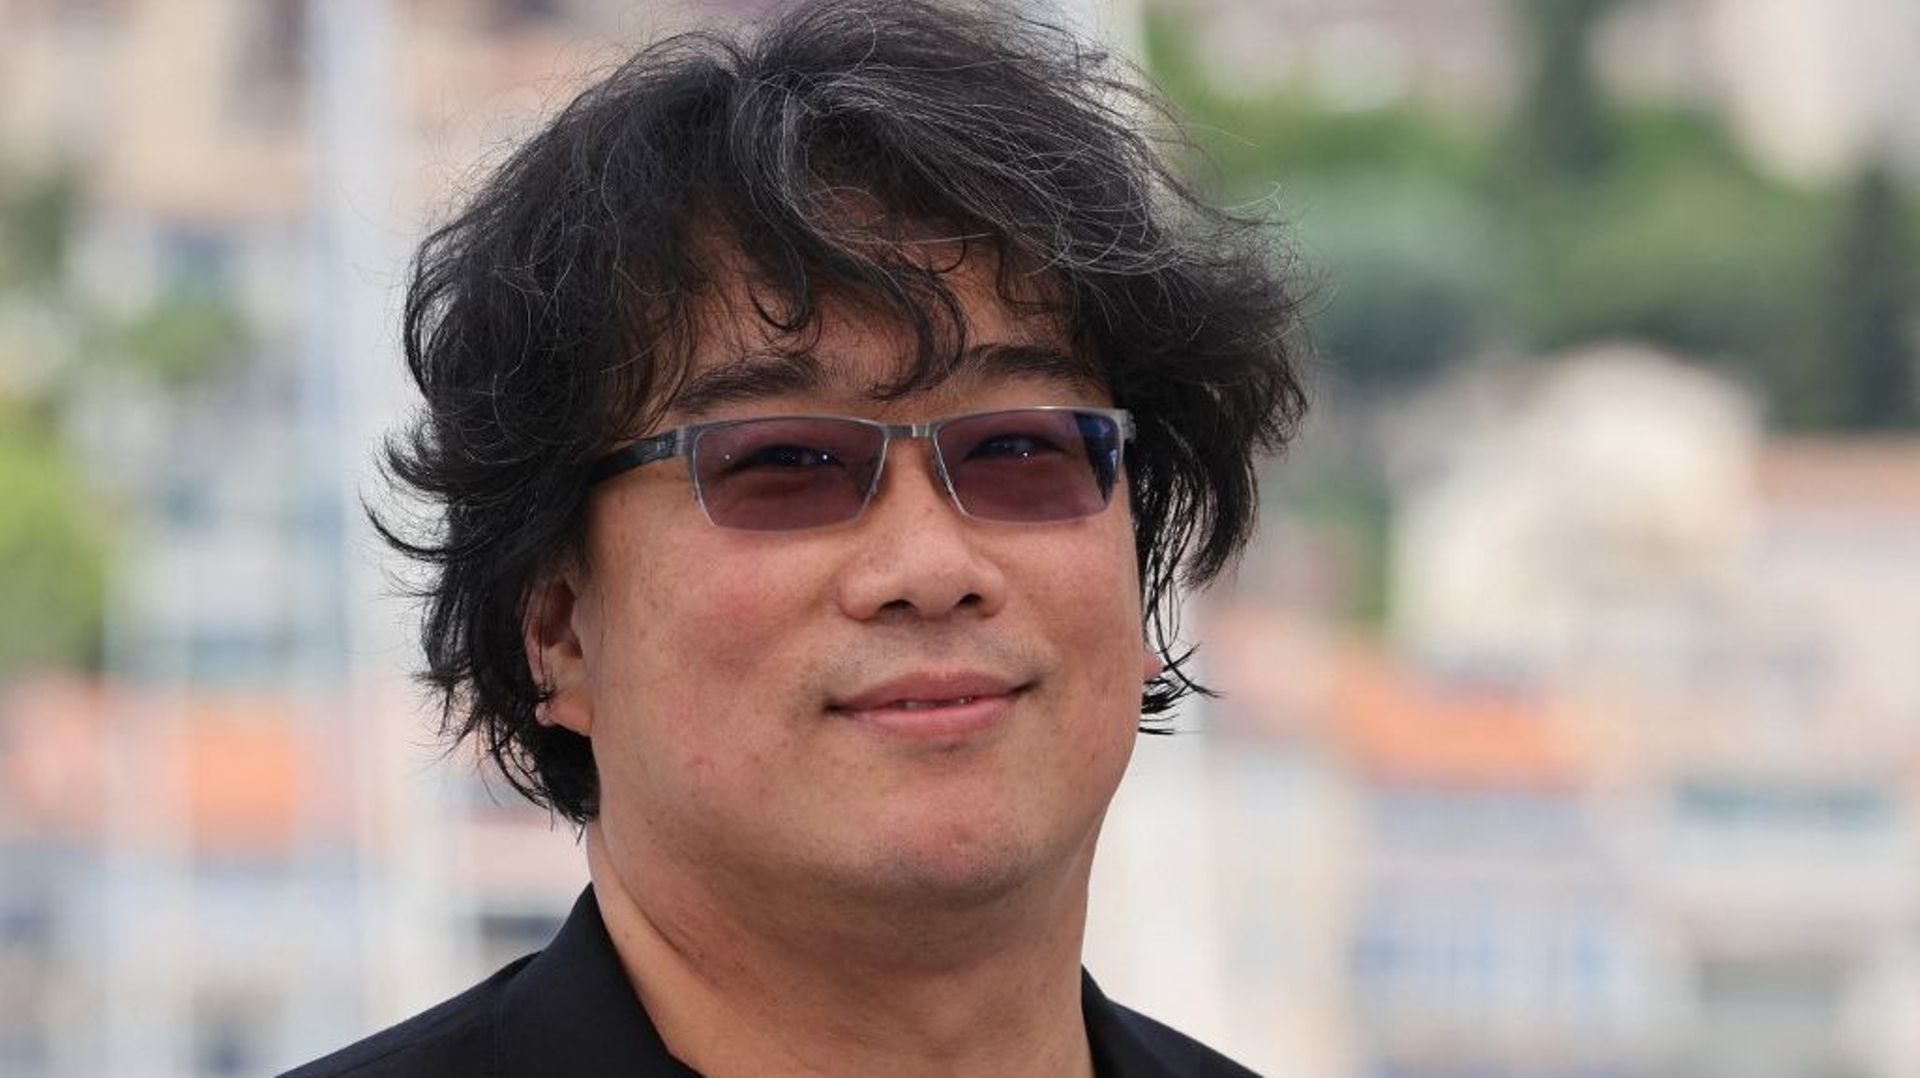 Le jury sera présidé par Bong Joon-Ho, réalisateur de "Parasite", Palme d’Or 2019 et Oscar du meilleur film l’année suivante.